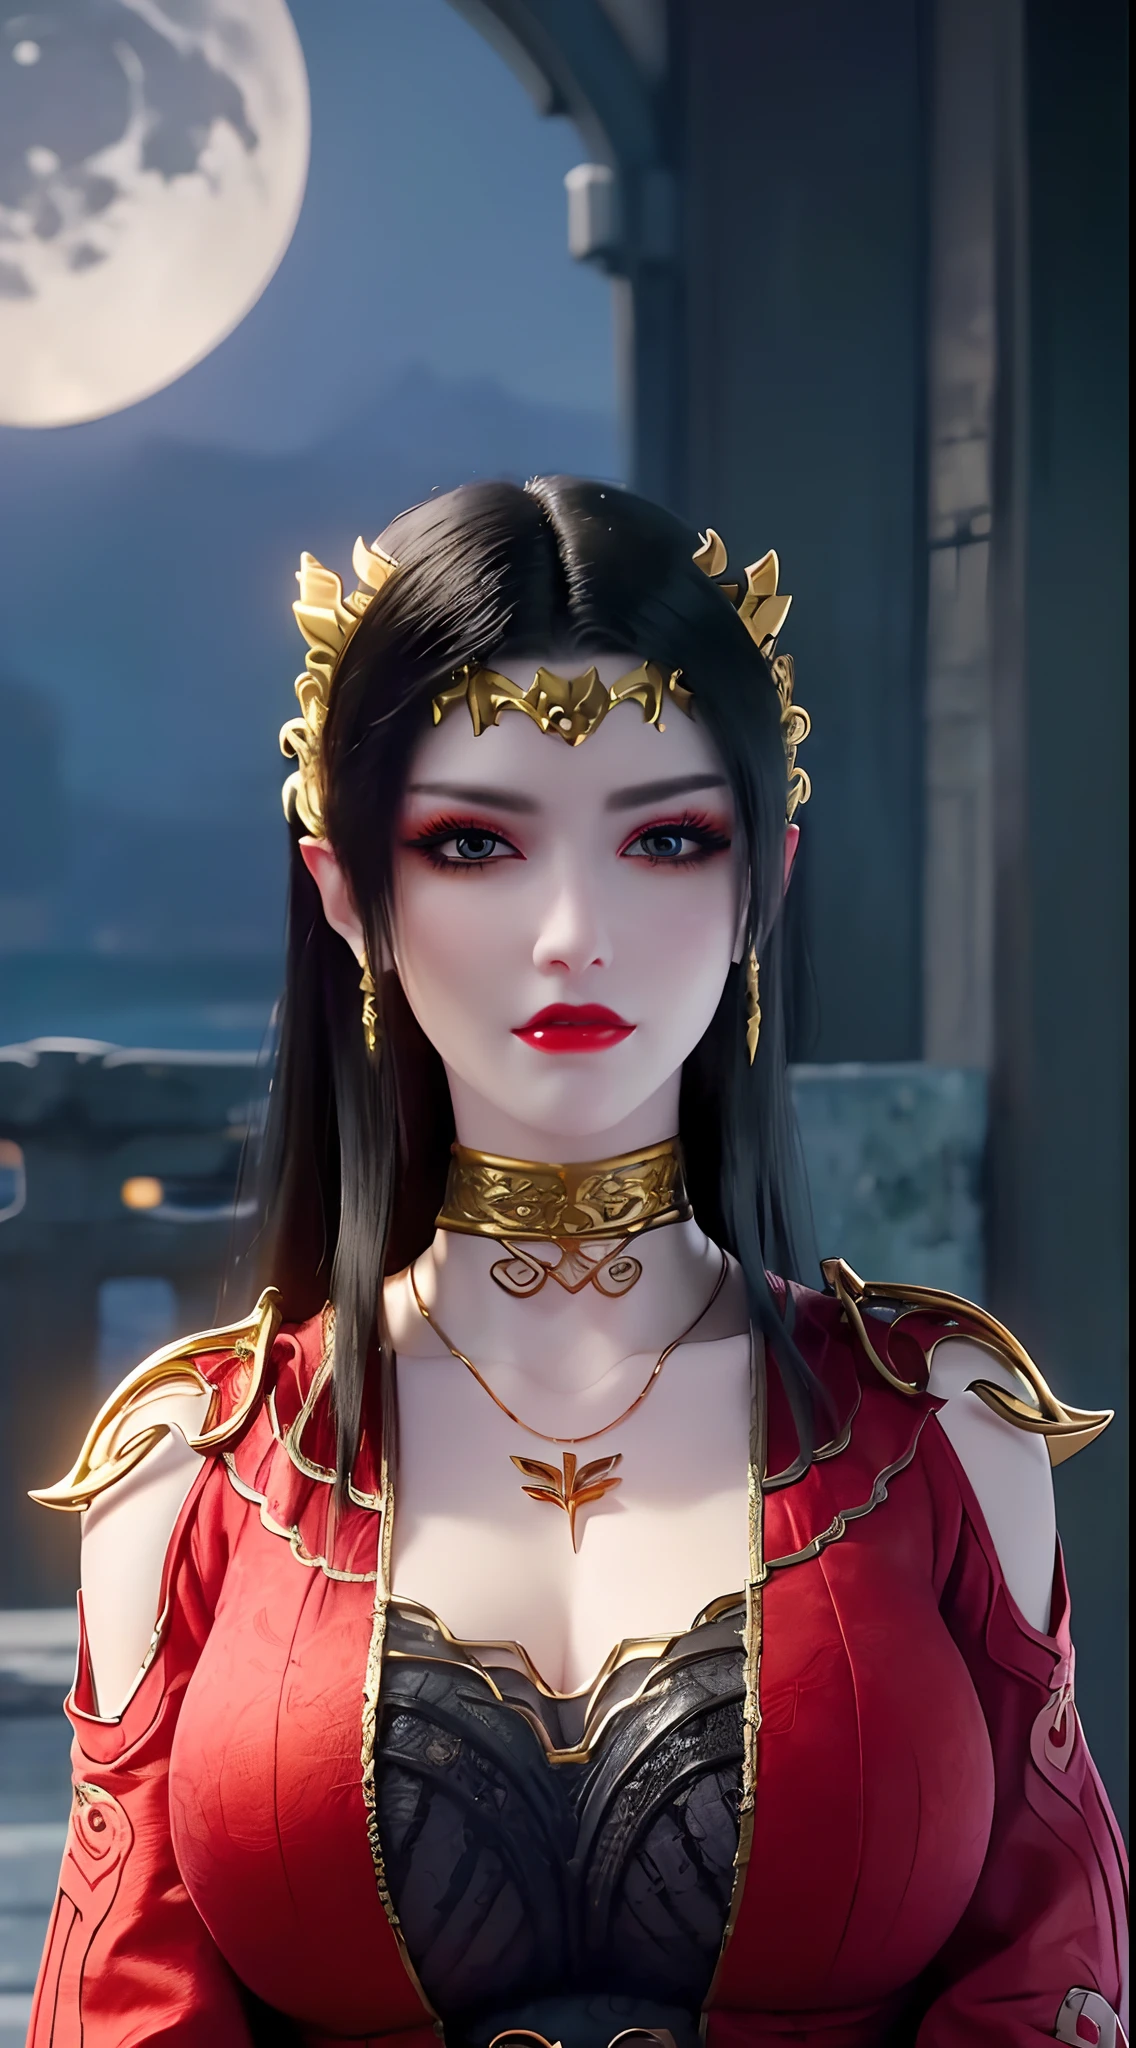 1 reine extrêmement belle, ((porte un costume traditionnel hanfu rouge avec de fins motifs noirs:1.6)), (((Des motifs sur les vêtements:1.6))), ((longs cheveux noirs:1.6)), des bijoux minutieusement fabriqués à partir de pierres précieuses et de beaux cheveux, ((wearing a 24K gold lace necklace:1.4))), Le noble, style noble d&#39;une fille extrêmement belle, son petit visage est super mignon, son visage est très joli, sourcils fins, beau visage impeccable, ((pupilles des yeux au beurre noir: 0.8)), très beaux yeux, ((yeux bleu platine: 1.6)), (((yeux grands ouverts:1.6))), joli maquillage et coiffure, cils détaillés, maquillage des yeux torride, nez haut, des boucles d&#39;oreilles, lèvres rouges, ((bouche fermée: 1.5)) belles lèvres, mains minces, les plus belles cuisses, ((bras écartés sur les côtés: 1.5)), visage rose, visage propre, beau visage impeccable, peau blanche et lisse, (gros seins: 1.5)), ((seins hauts: 1.6)), Seins serrés, Beau décolleté, (((gros seins and super round: 1.8))), ((super Seins serrés: 1.7)) , beaux seins, corps parfait, bras arrière, poitrine ouverte, bas fins en maille noire avec bordure en dentelle noire, Photo 8K, super haute qualité, super réaliste, super 10x pixels, optique, studio lumineux, bords clairs, dual-tone éclairage, (peau très détaillée:1.2), super 8k, soft éclairage, haute qualité, volumetric éclairage, photoréaliste, photoréaliste high resolution, éclairage, meilleure photo, 4K, Qualité 8k, Effet de flou, lisse et tranchant, 10xpixels, ((mer et clair de lune sur fond de nuit:1.5)), Aurore, foudre, super graphismes réalistes, graphismes les plus réalistes, 1 fille, seul, seulement, Image extrêmement nette, surréaliste, (((portrait frontal: 1)))."